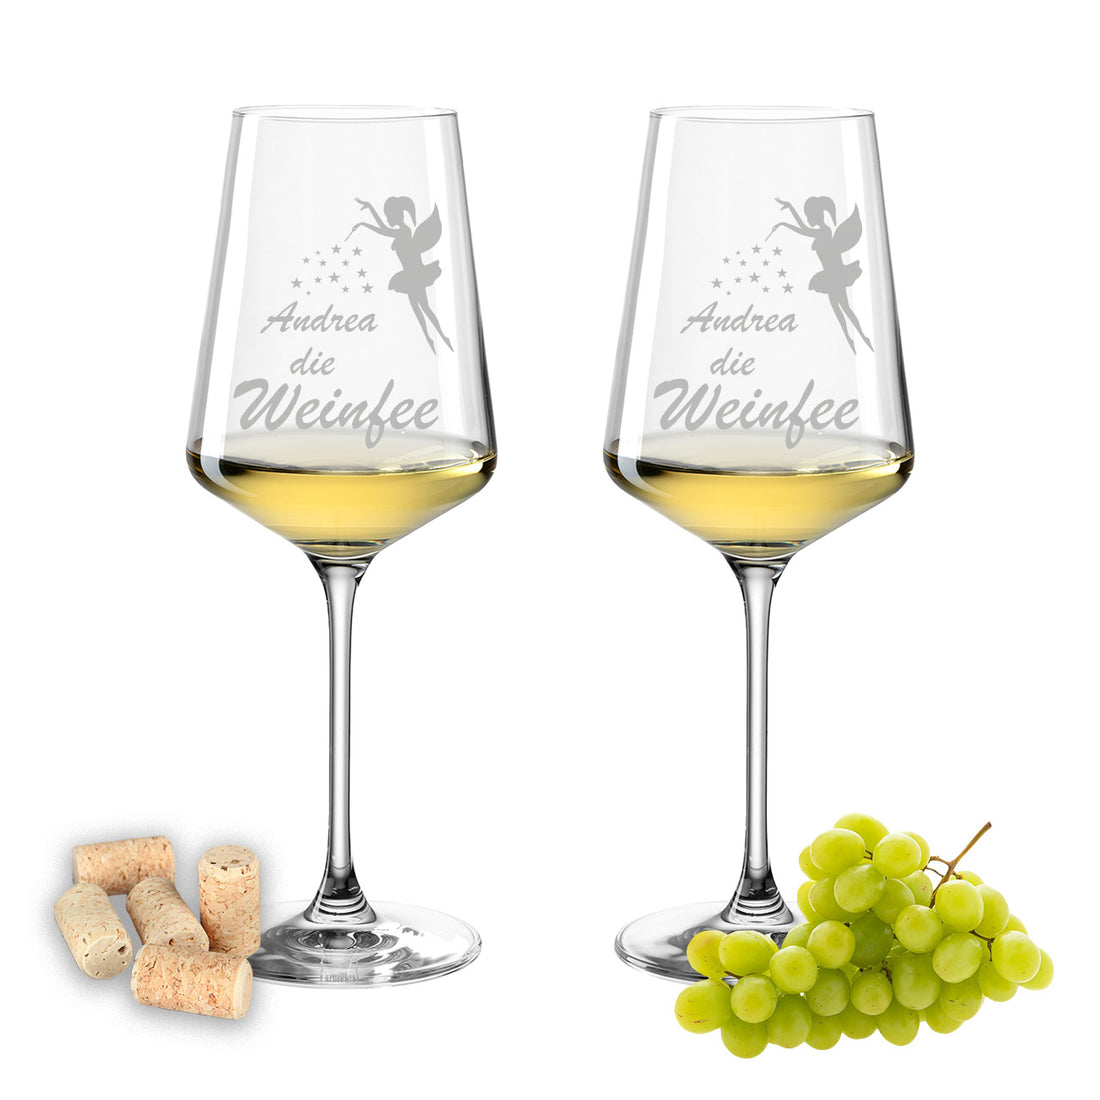 Weinglas mit Gravur Leonardo Puccini "Wunschname DIE WEINFEE" 2 Gläser mit Wunschname